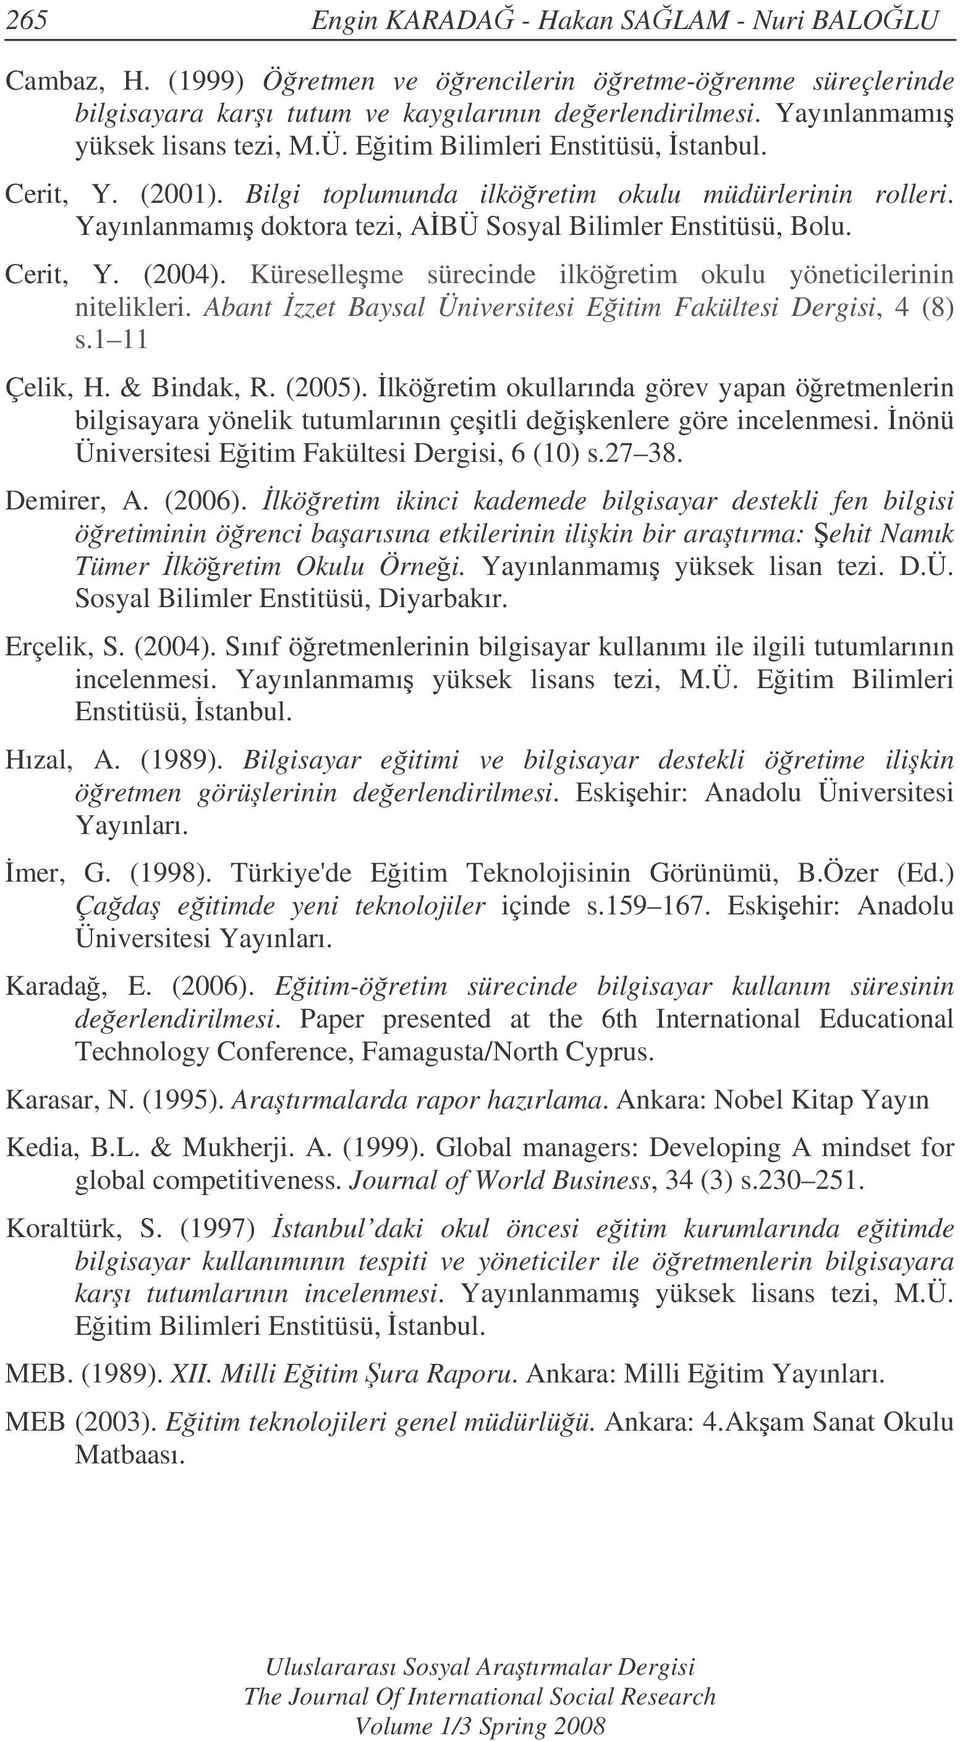 Yayınlanmamı doktora tezi, ABÜ Sosyal Bilimler Enstitüsü, Bolu. Cerit, Y. (2004). Küreselleme sürecinde ilköretim okulu yöneticilerinin nitelikleri.